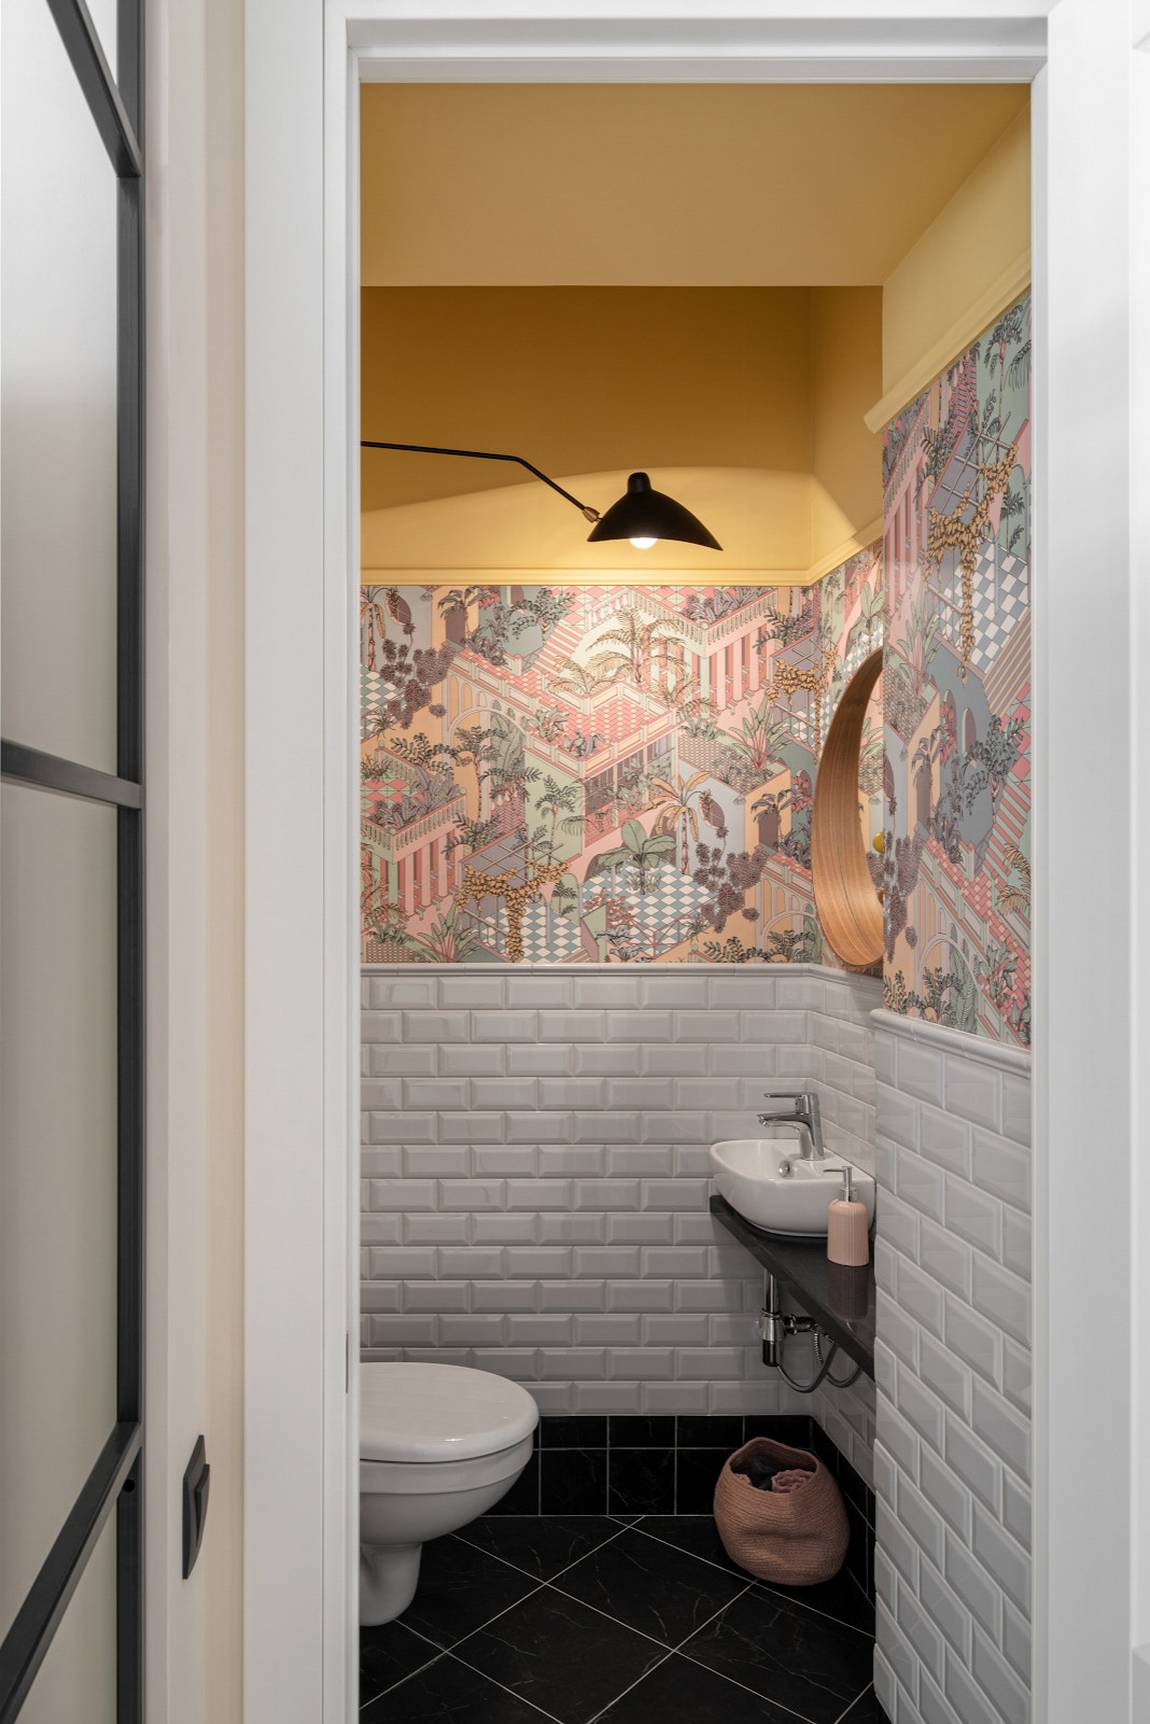 Nhà vệ sinh và phòng tắm được tách biệt thành 2 căn phòng khách nhau do thiết kế ban đầu của căn hộ. Sàn nhà lát gạch màu đen tạo sự tương phản với tấm xốp dán tường giả gạch màu trắng. 